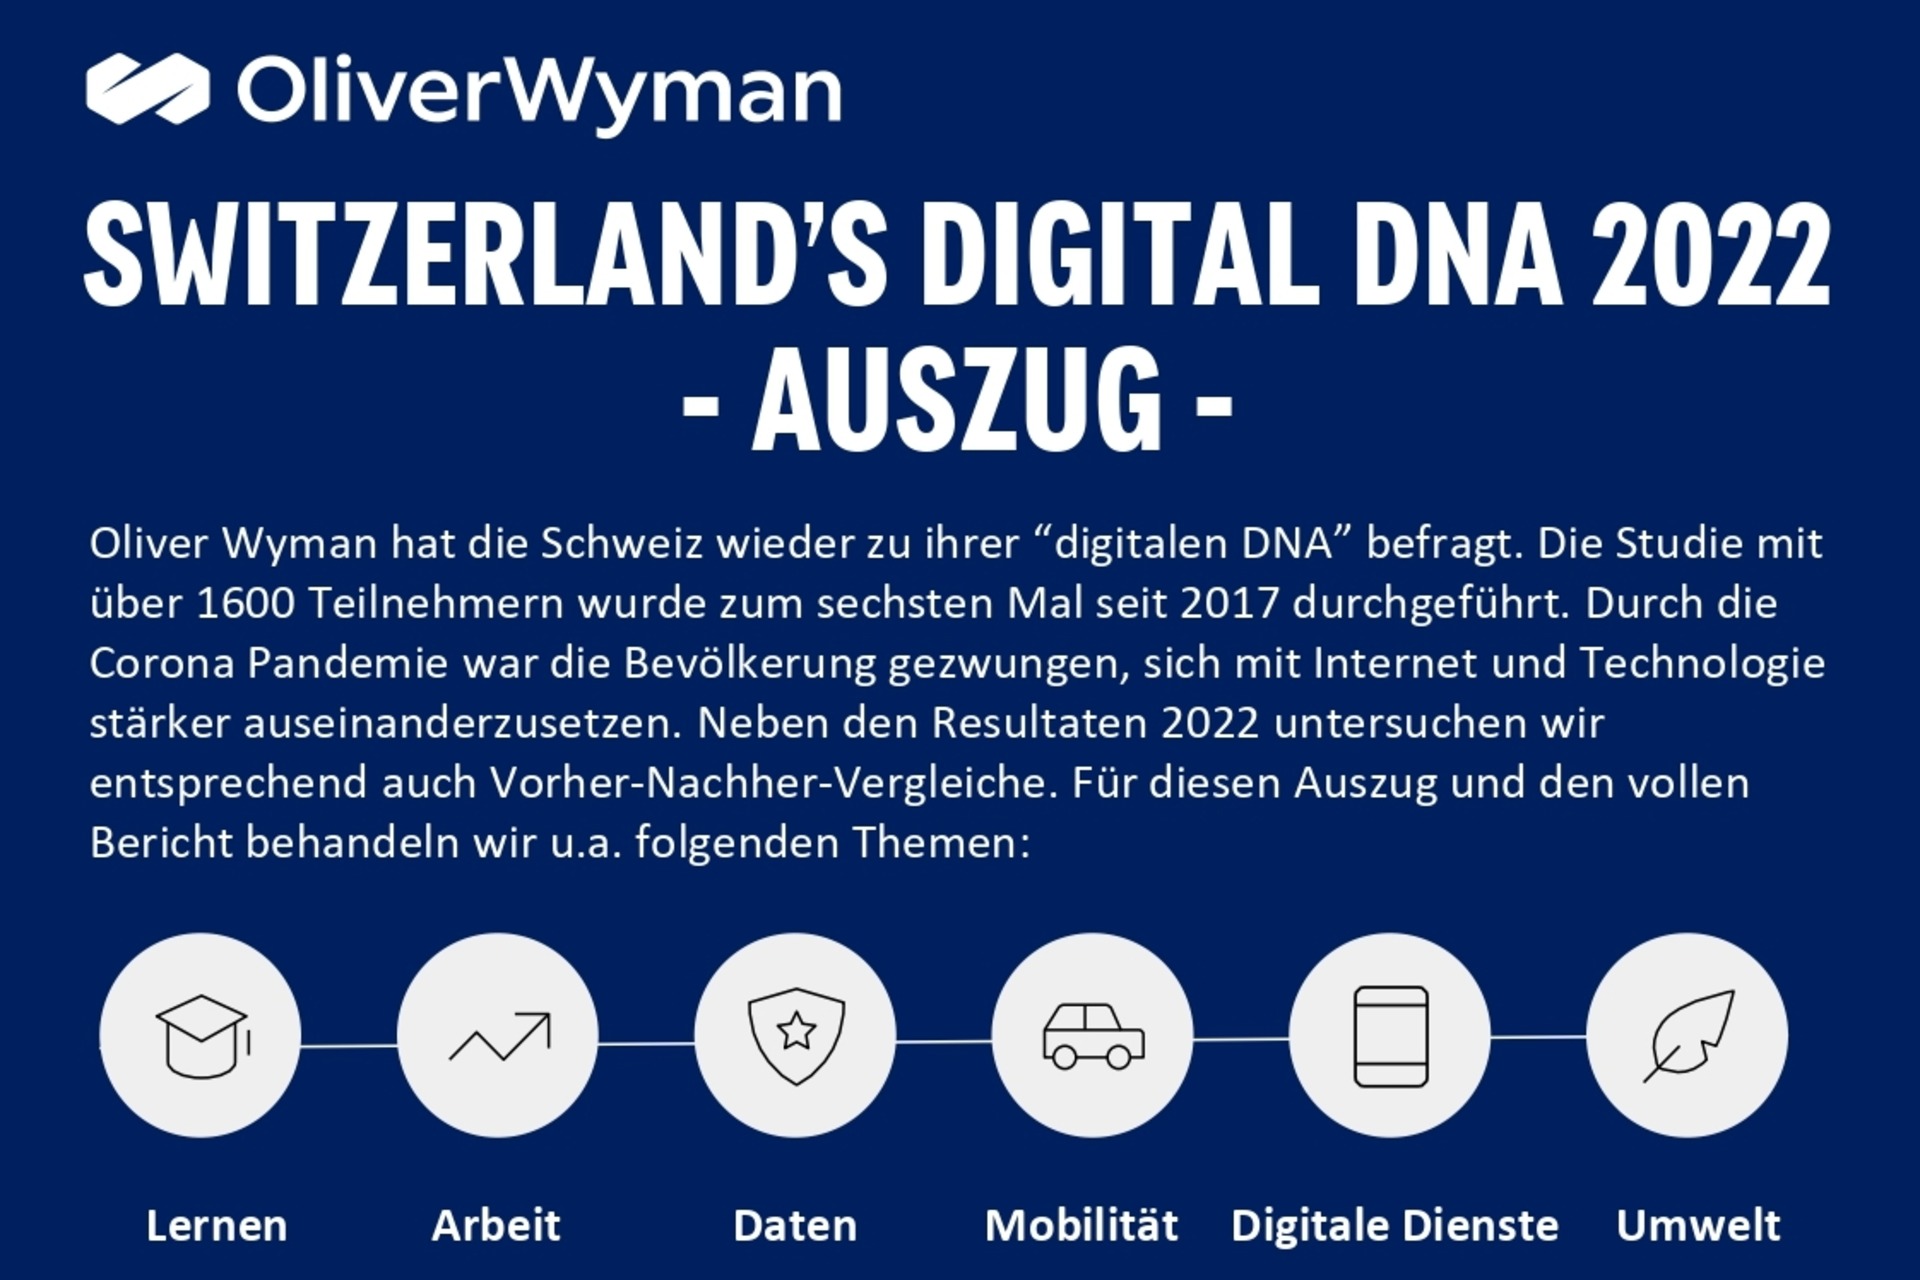 La parte superiore della prima pagina delle infografiche dell'inchiesta "Switzerlands Digital DNA" di Oliver Wyman e digitalswitzerland